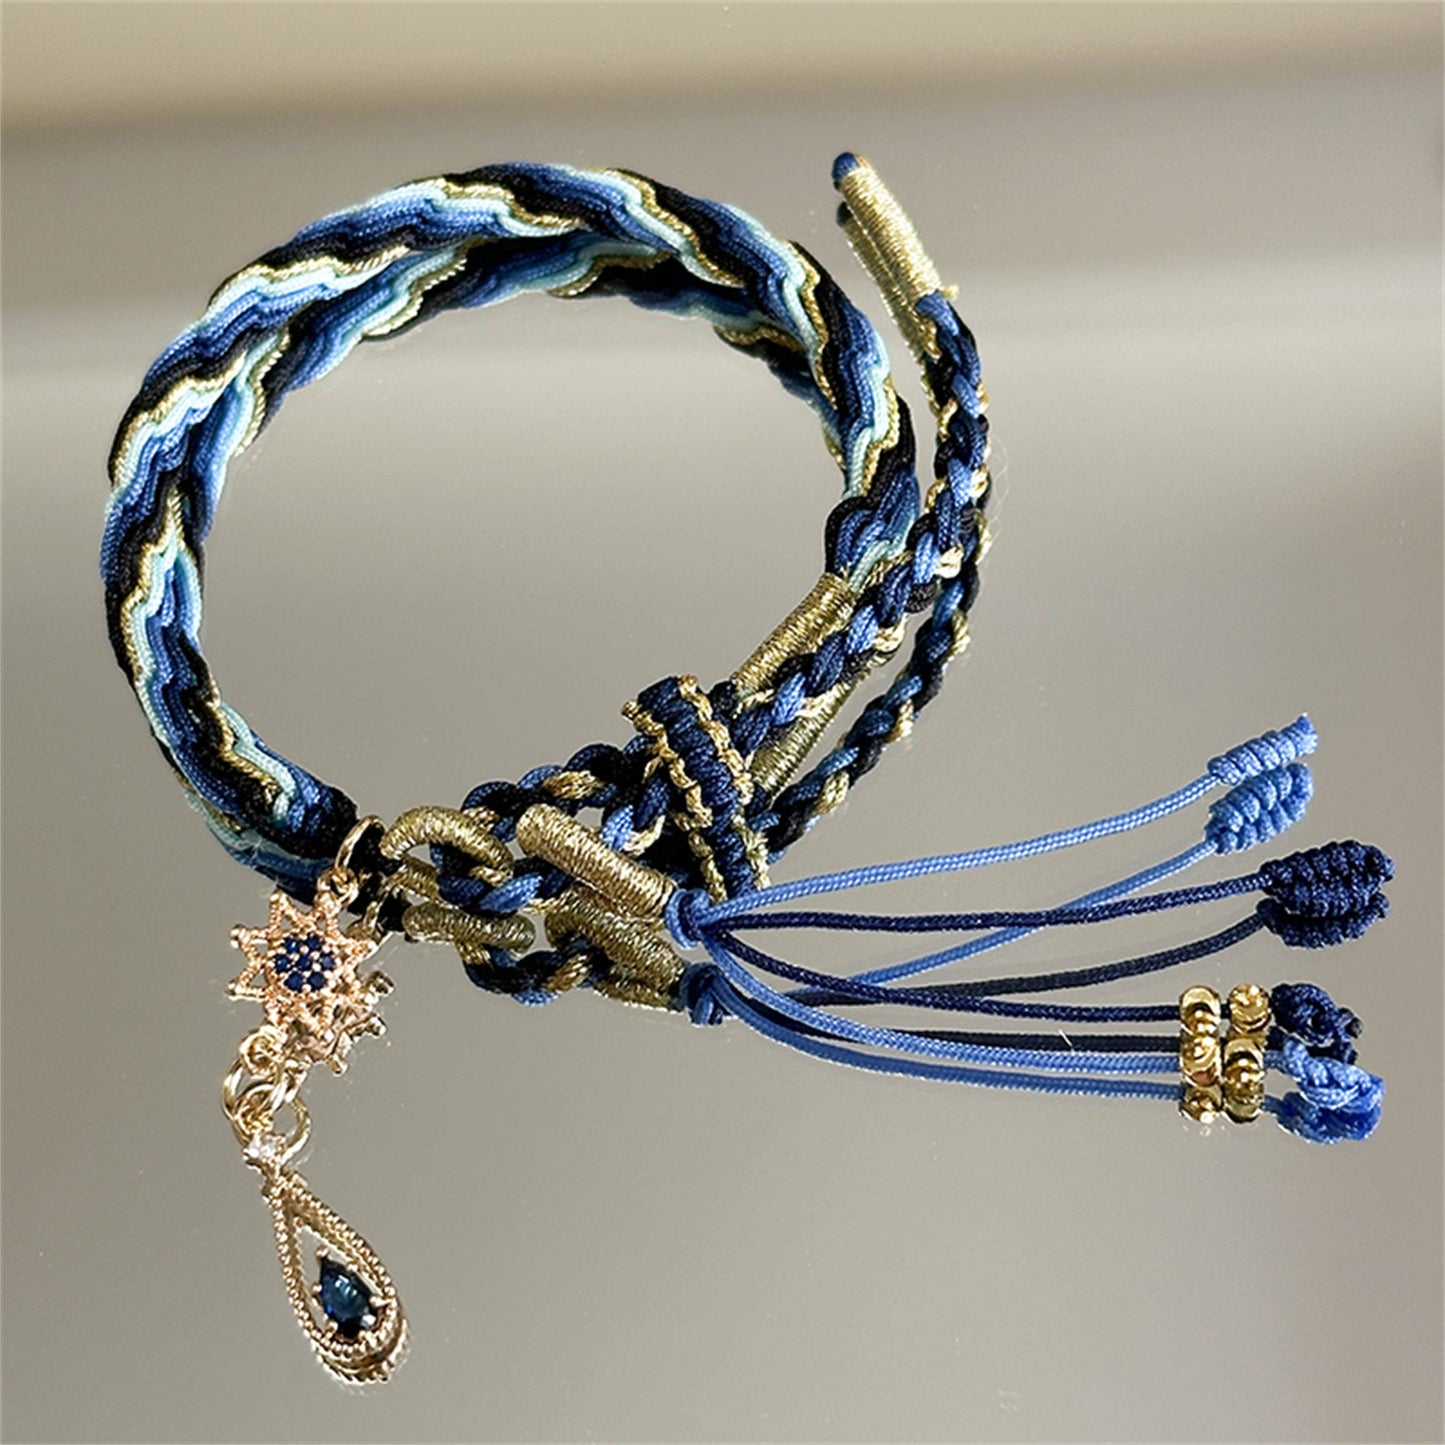 Genshin Ayato Bracelet Hand-Woven Bracelet